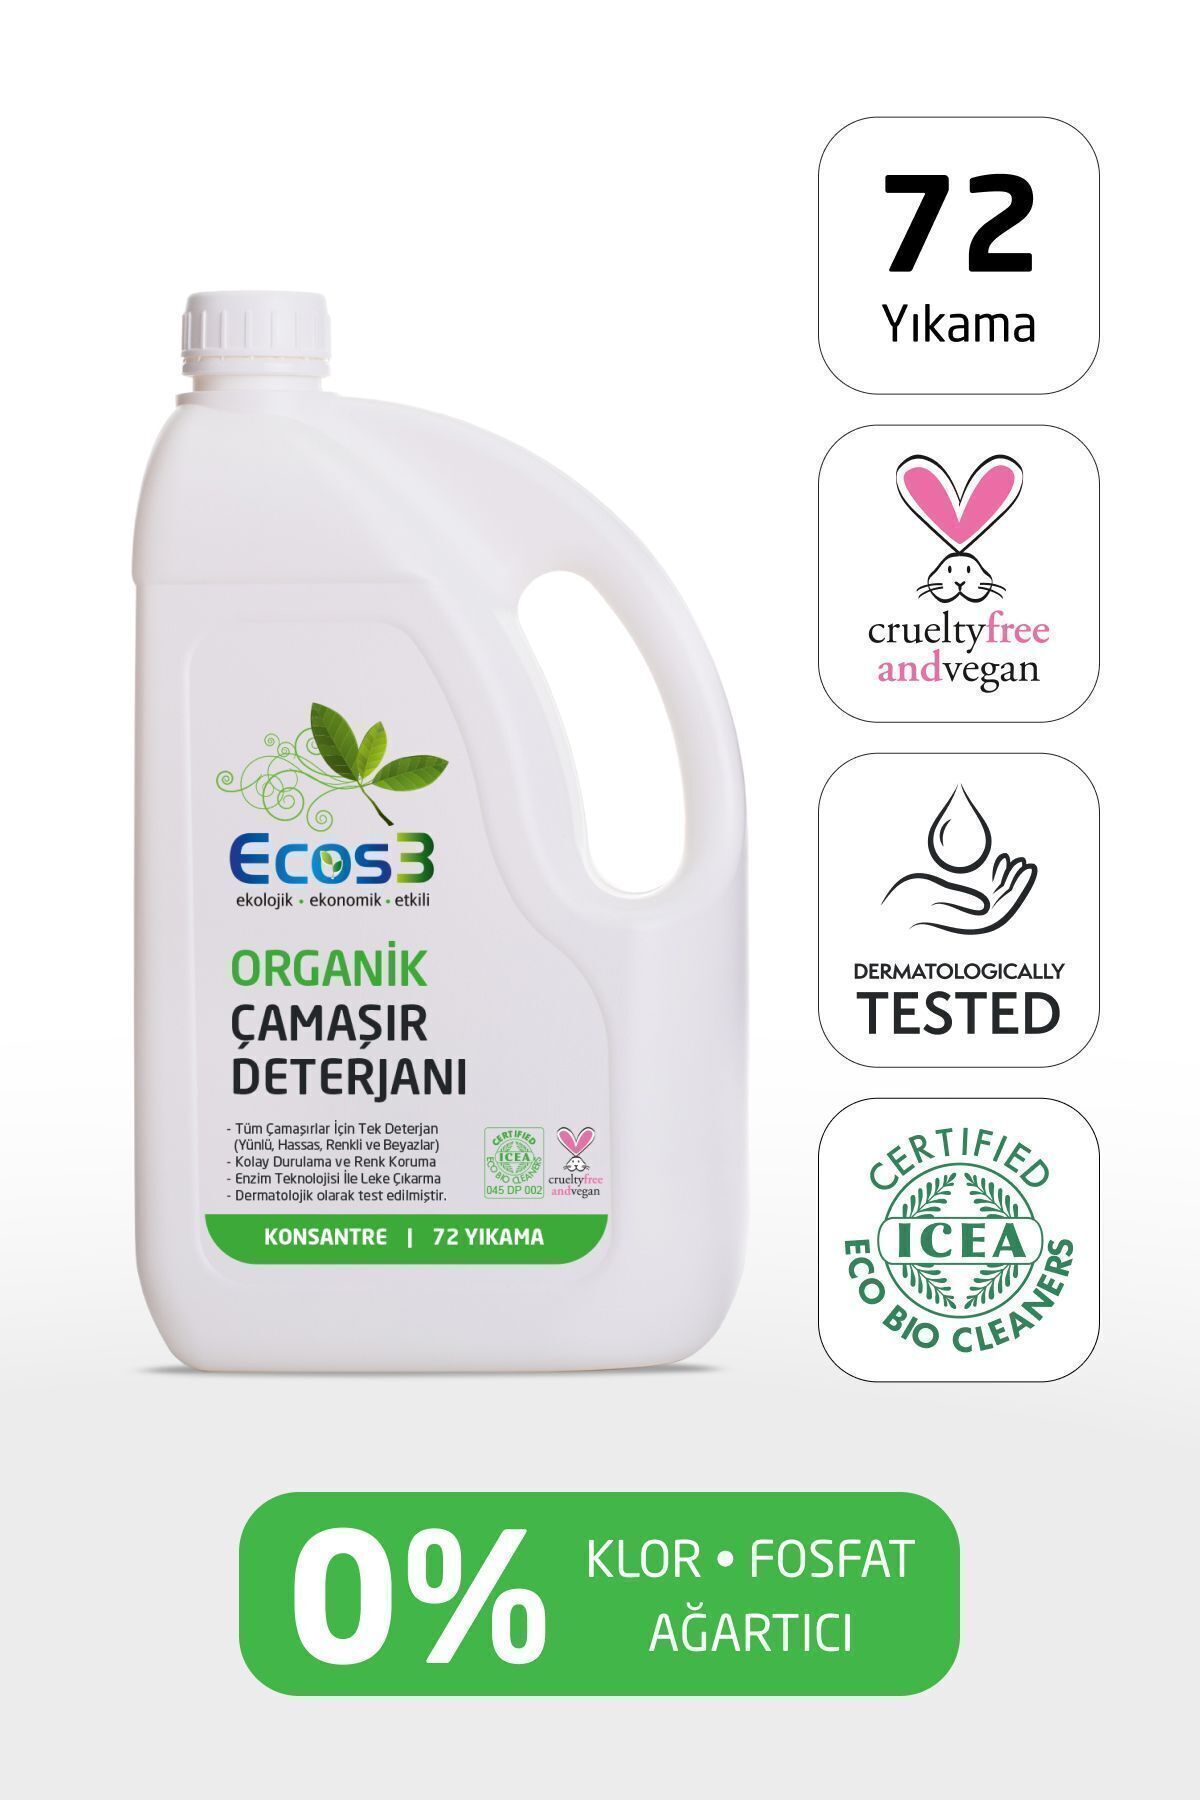 Ecos3 Sıvı Çamaşır Deterjanı, Organik & Vegan Sertifikalı, Ekolojik, Extra Konsantre, 72 Yıkama, 2.5 Lt